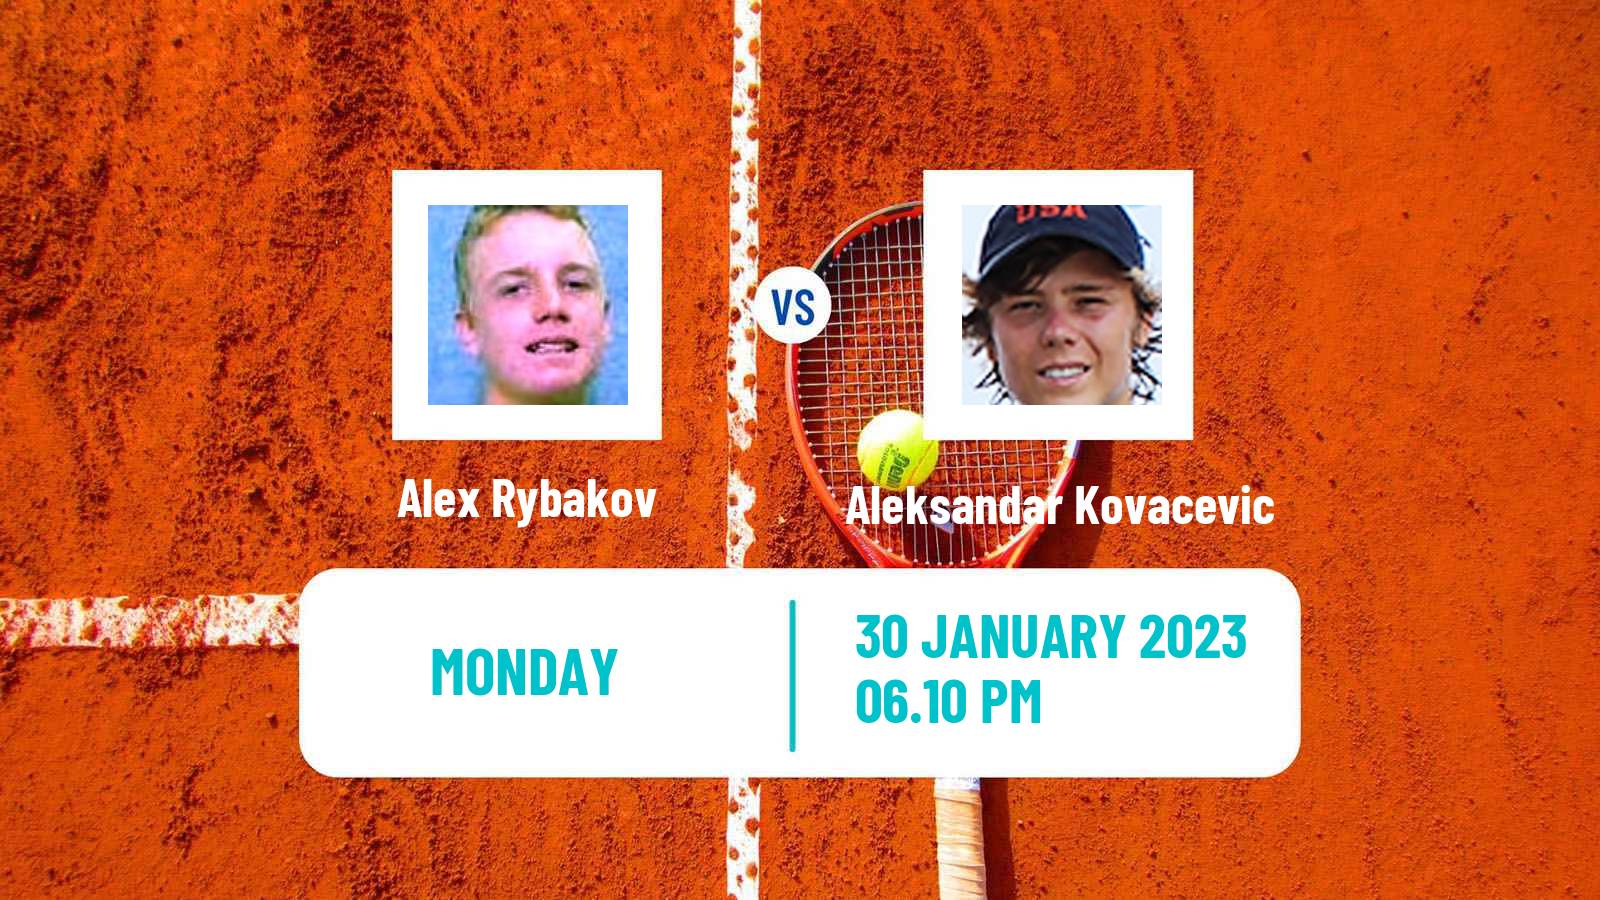 Tennis ATP Challenger Alex Rybakov - Aleksandar Kovacevic